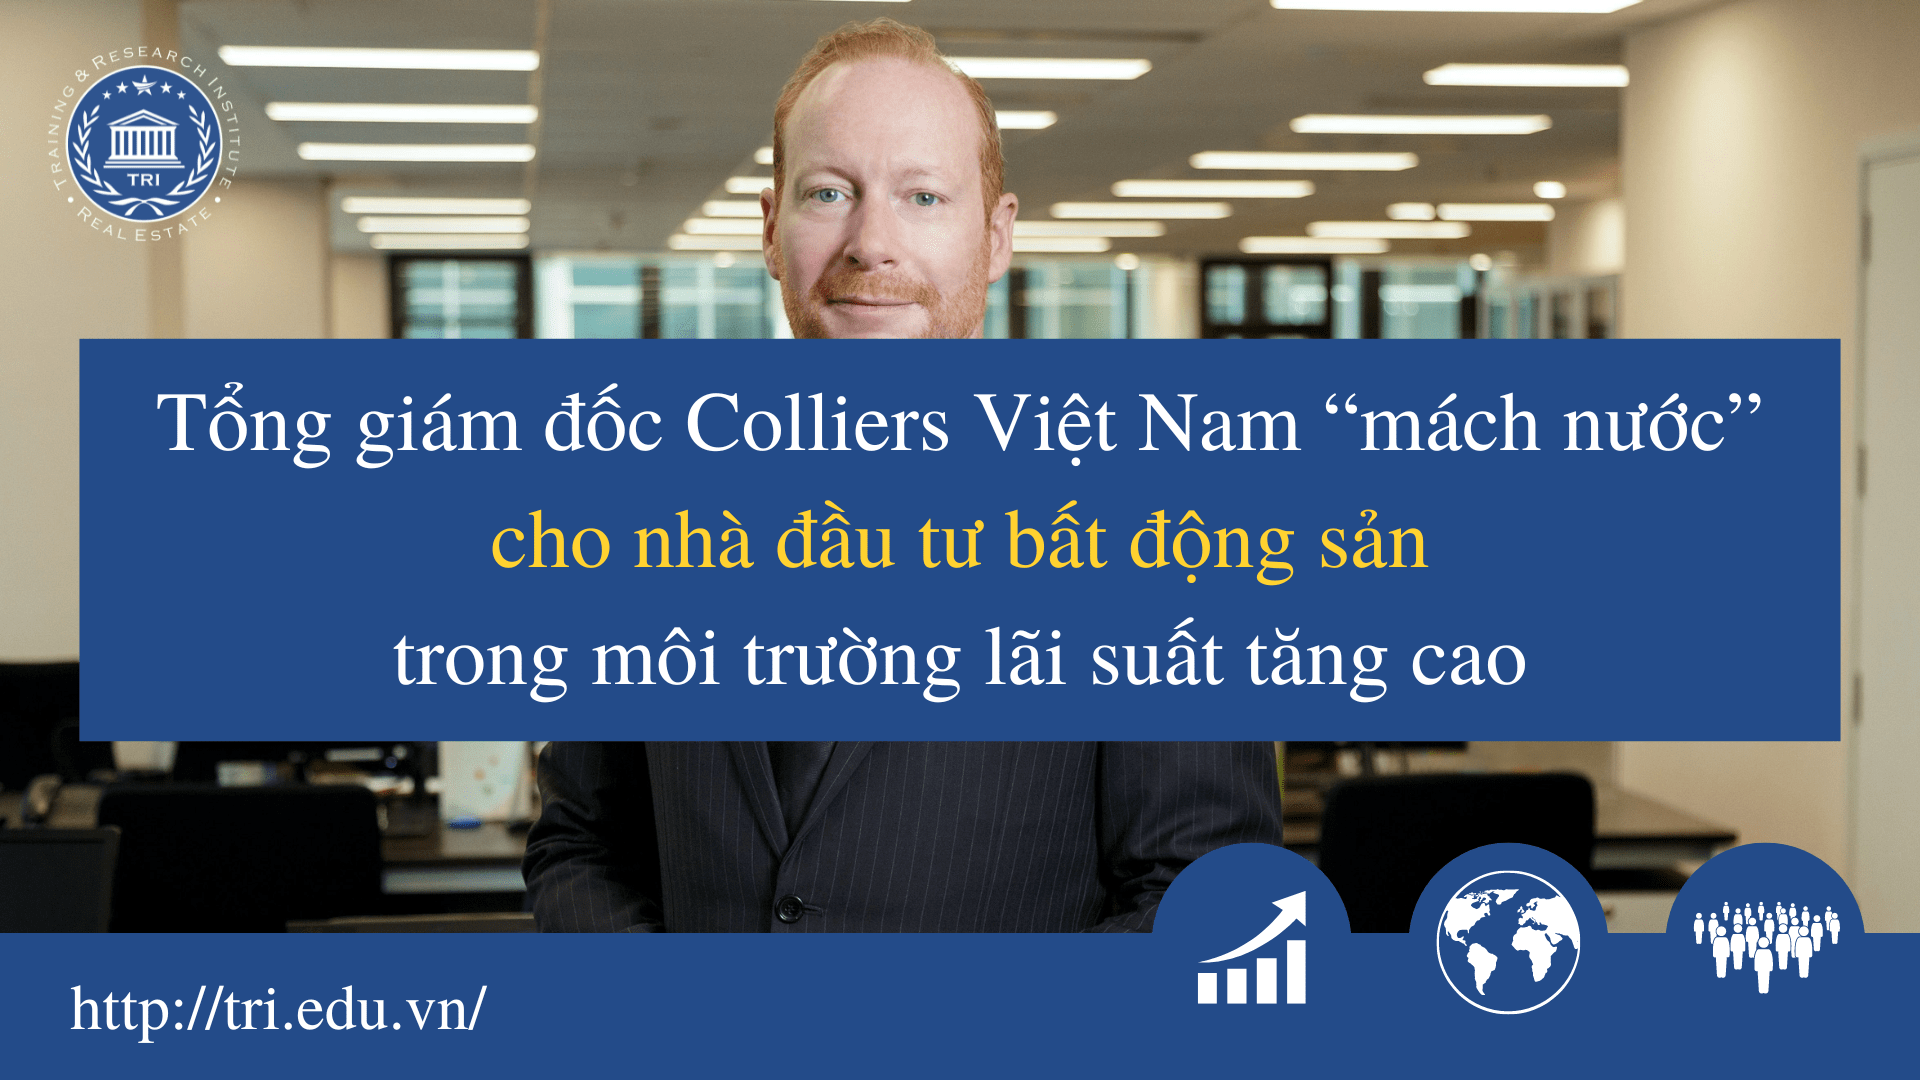 Tổng giám đốc Colliers Việt Nam “mách nước” cho nhà đầu tư bất động sản trong môi trường lãi suất tăng cao